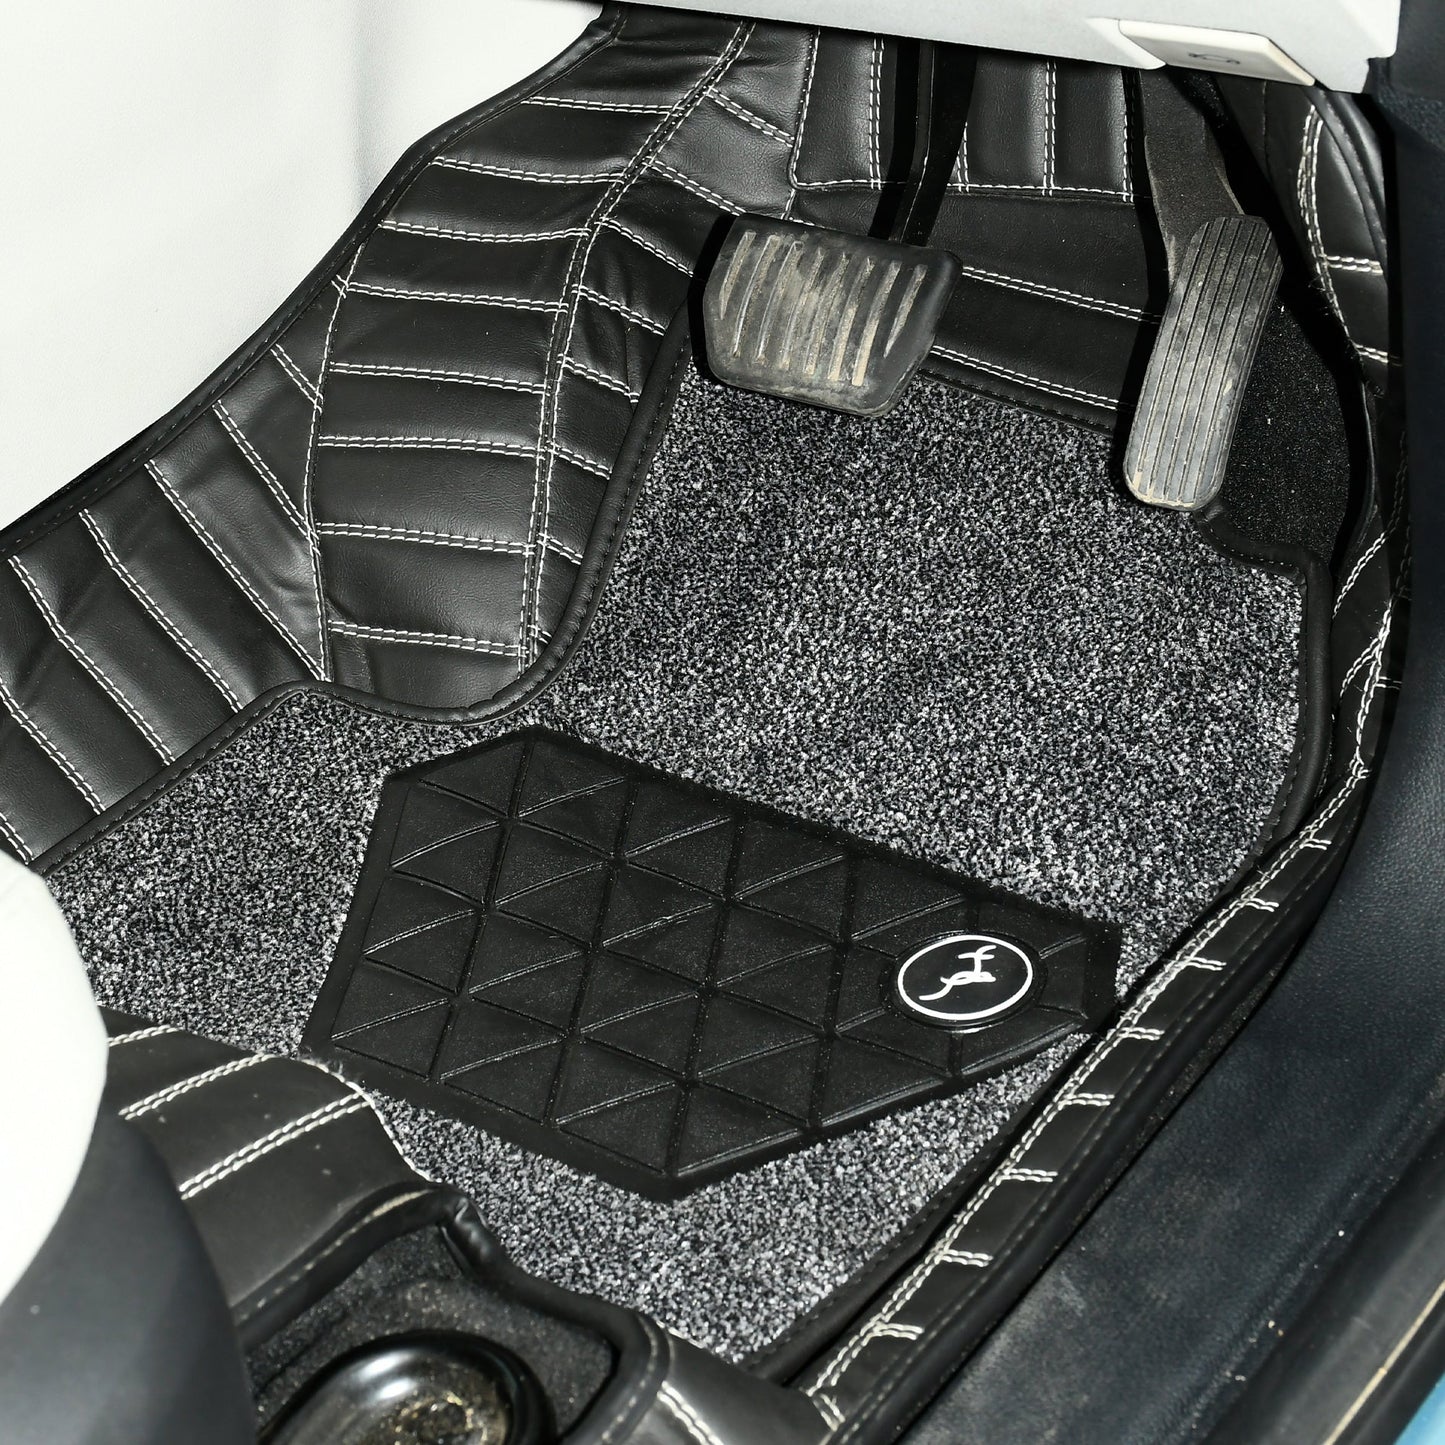 
                  
                    Top Gear 4D Pristine Topaz Car Mats for Tata Safari II 7-Crown Black(UM-Pepper)-7D MATS-TOP GEAR-CARPLUS
                  
                